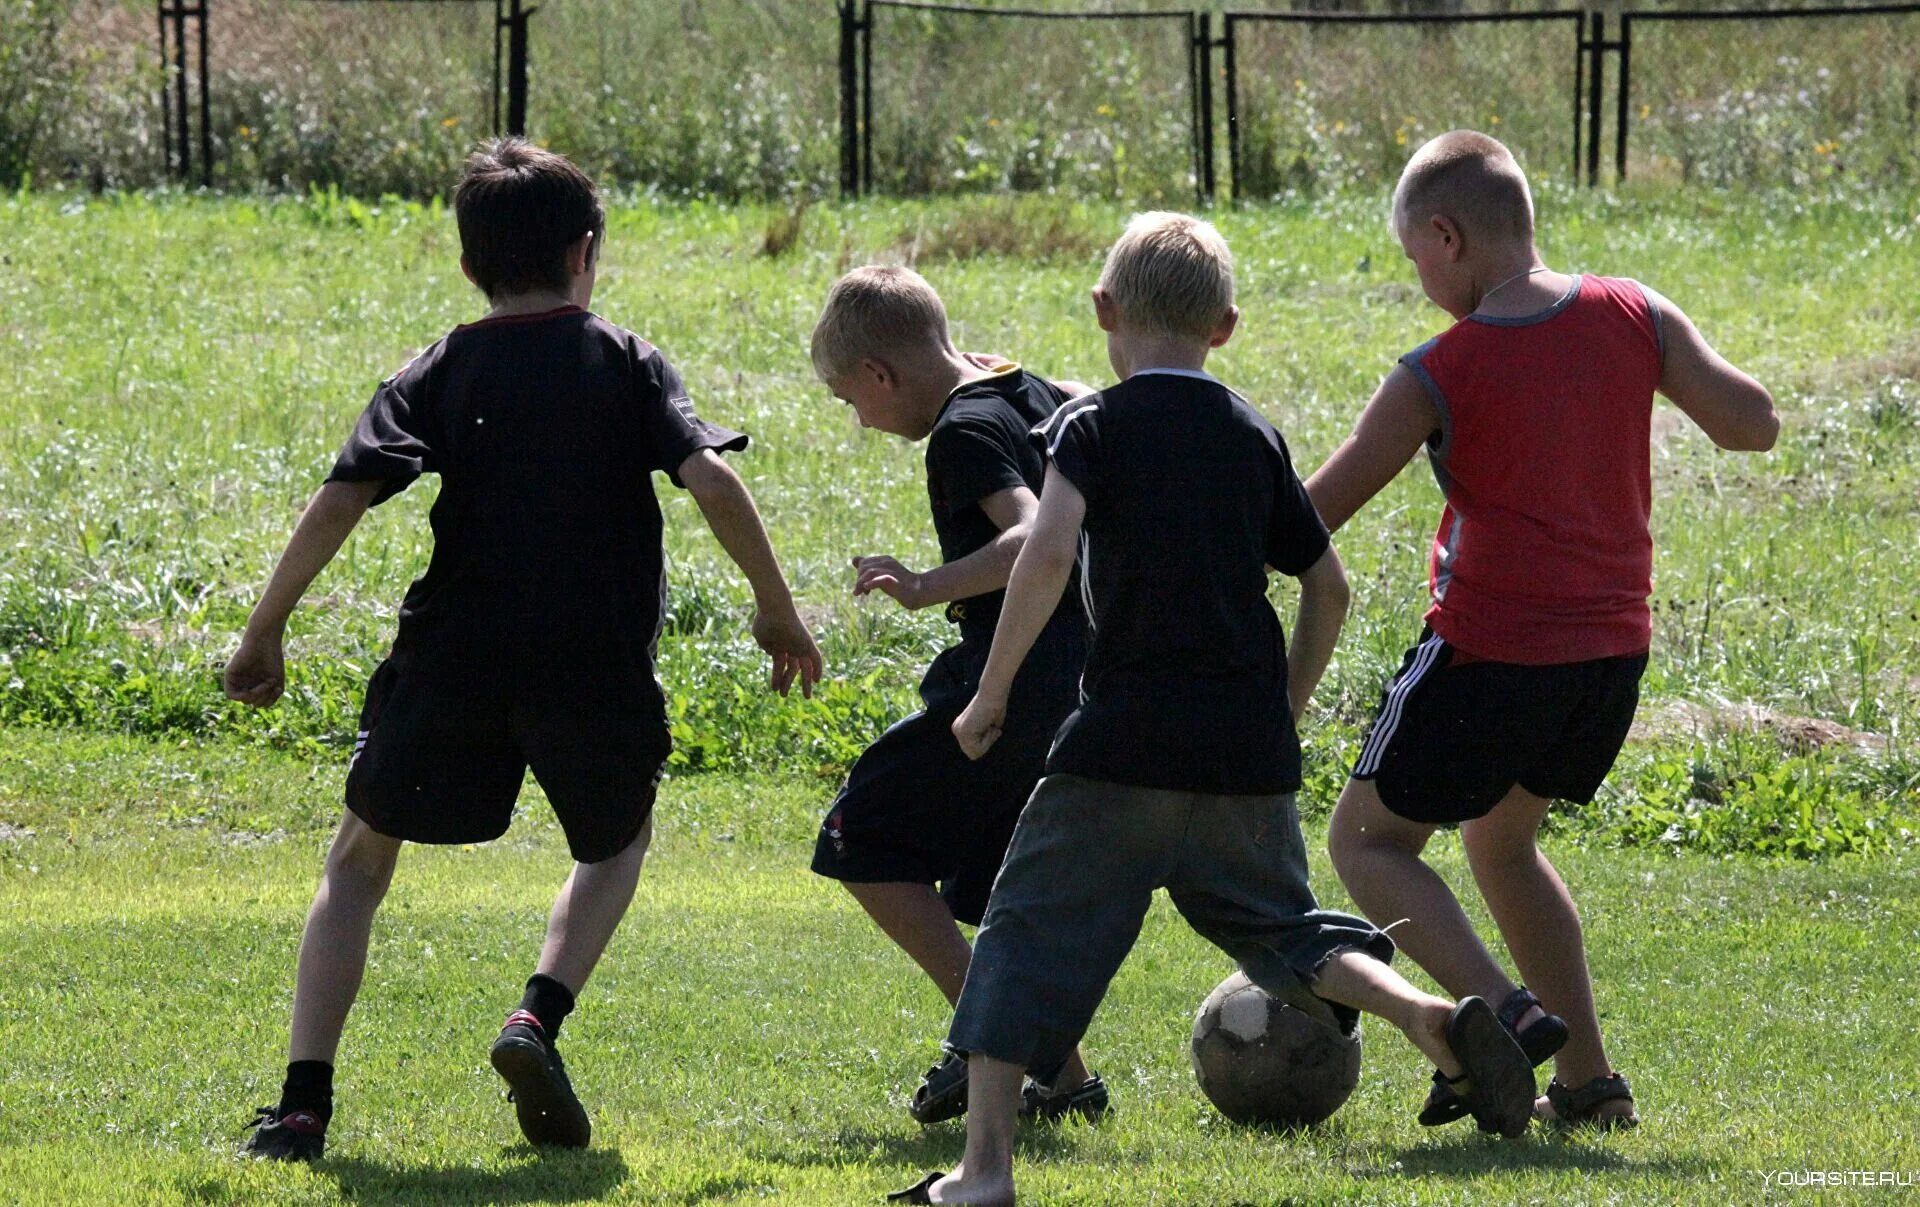 Дети играют в футбол. Дети во дворе. Футбол во дворе. Дети играющие в футбол во дворе. Ребята играют на улице